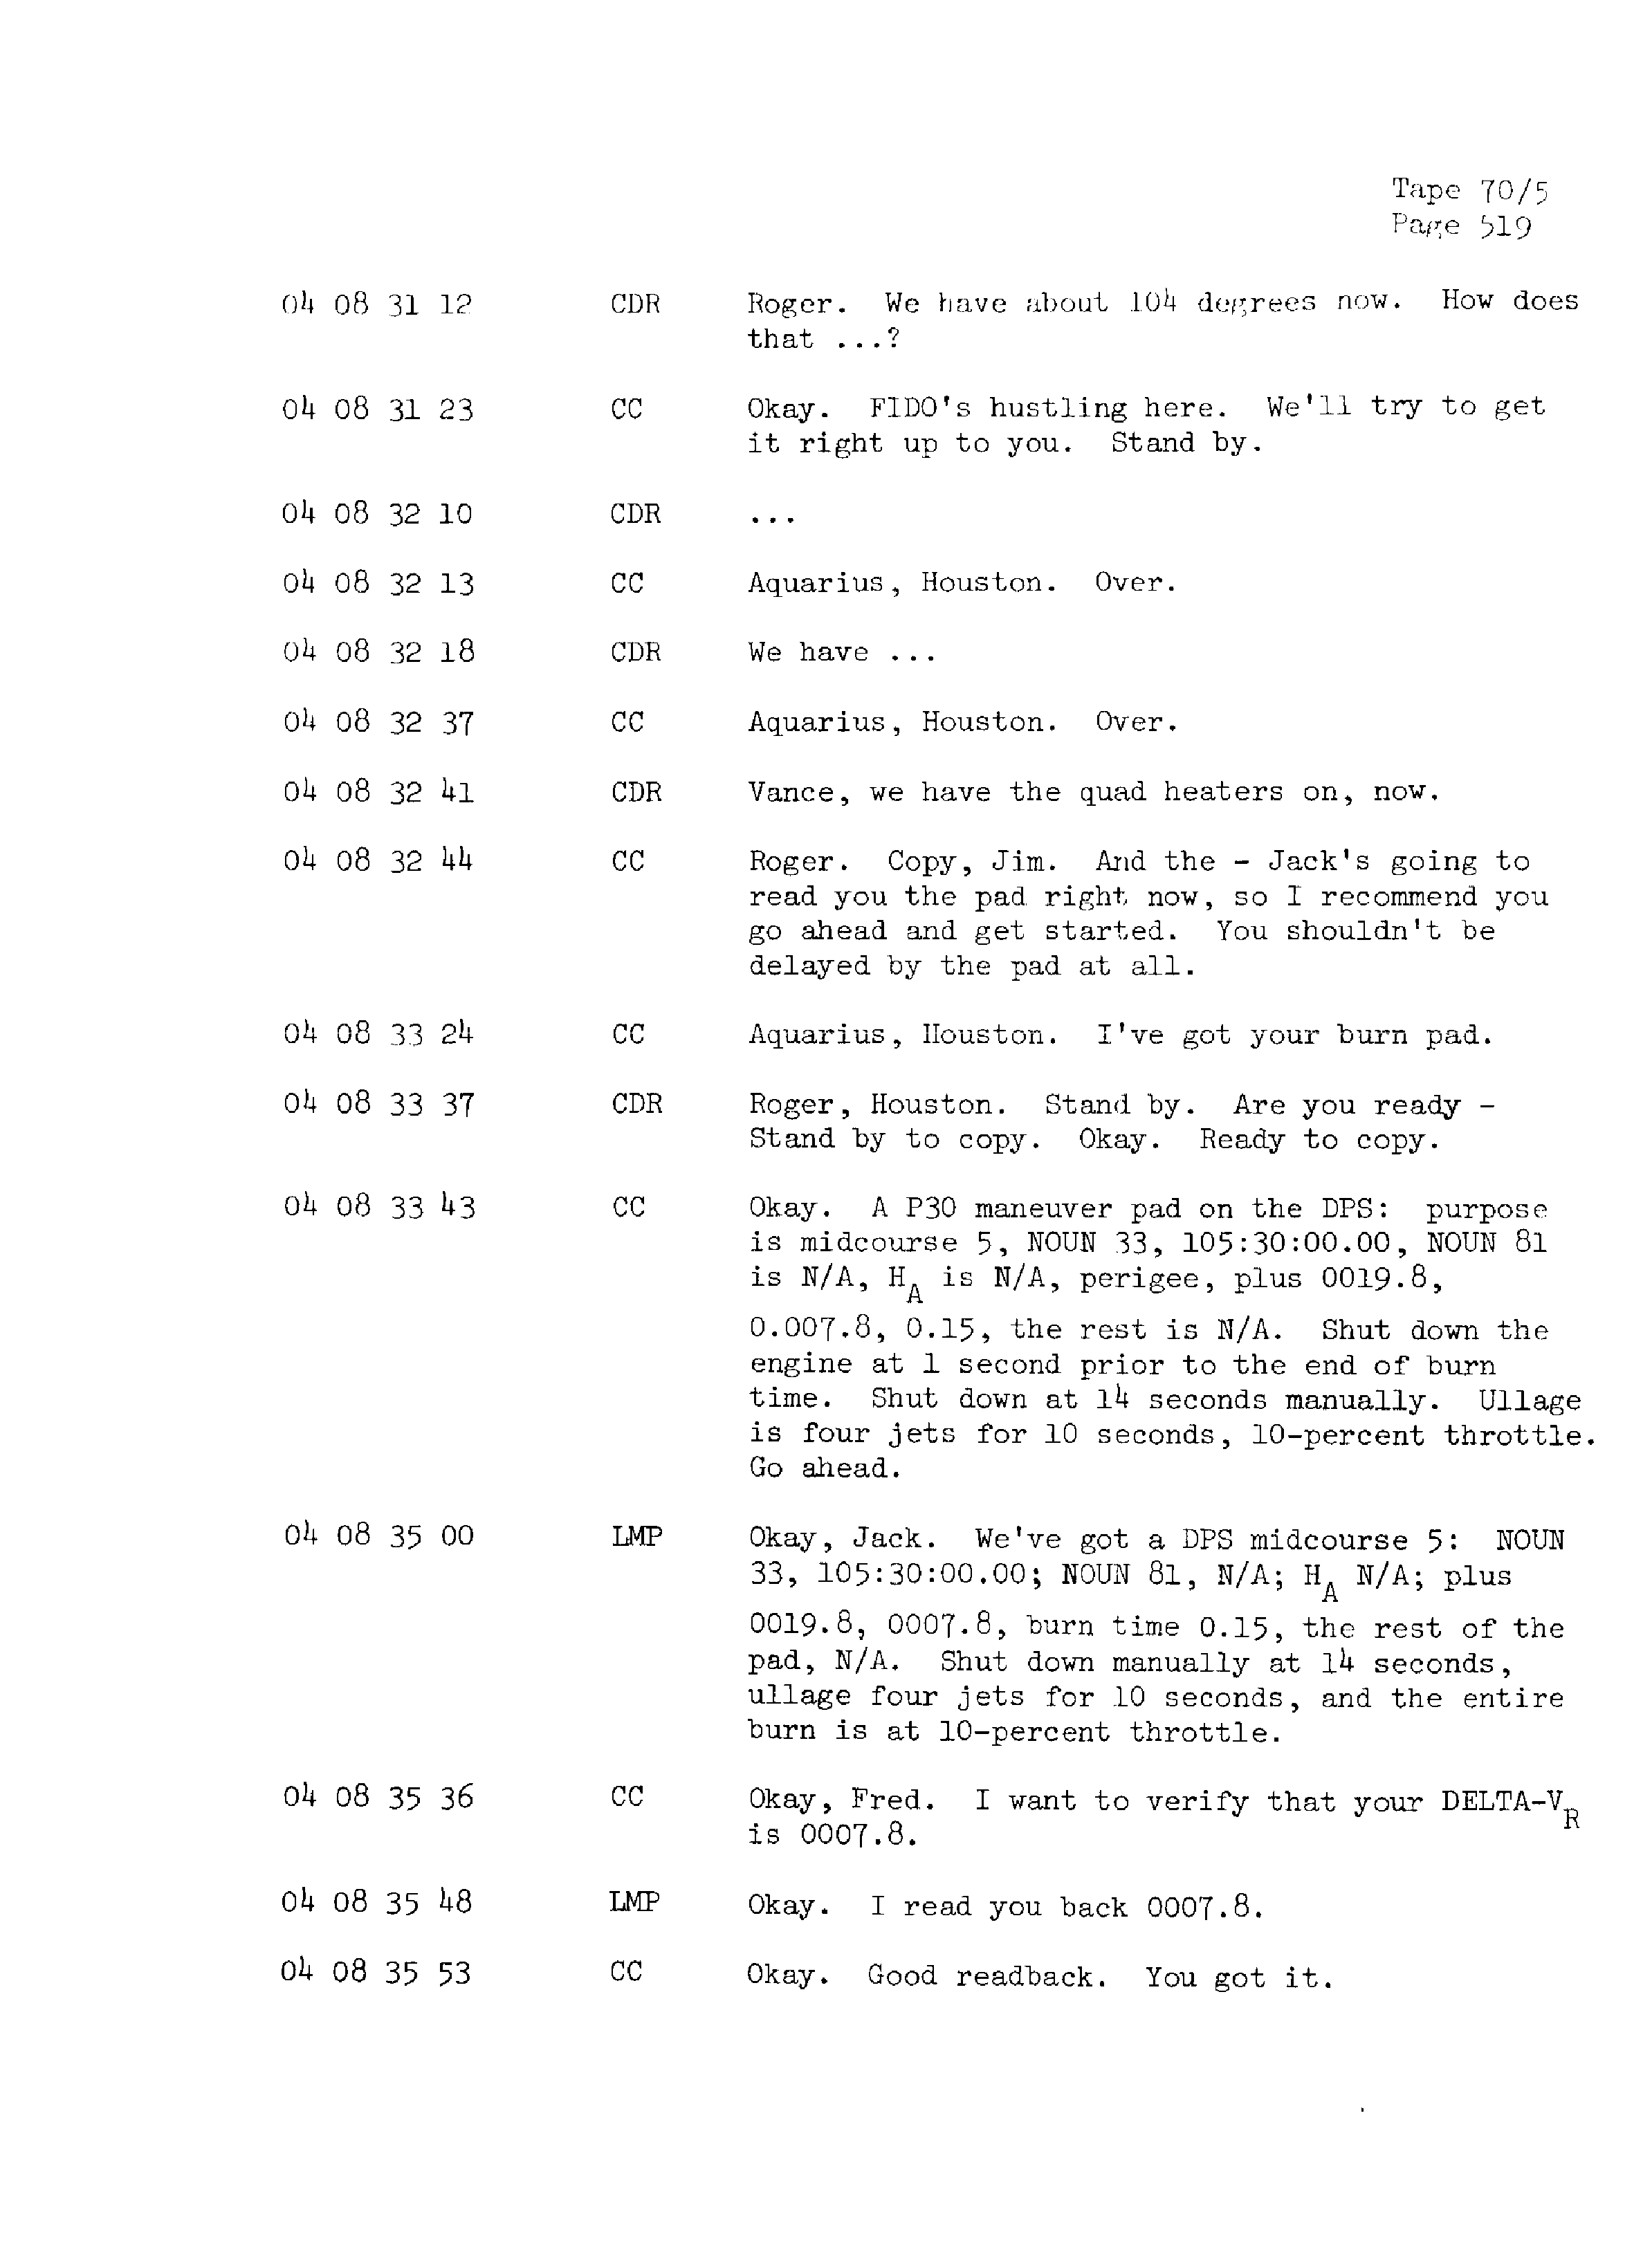 Page 526 of Apollo 13’s original transcript